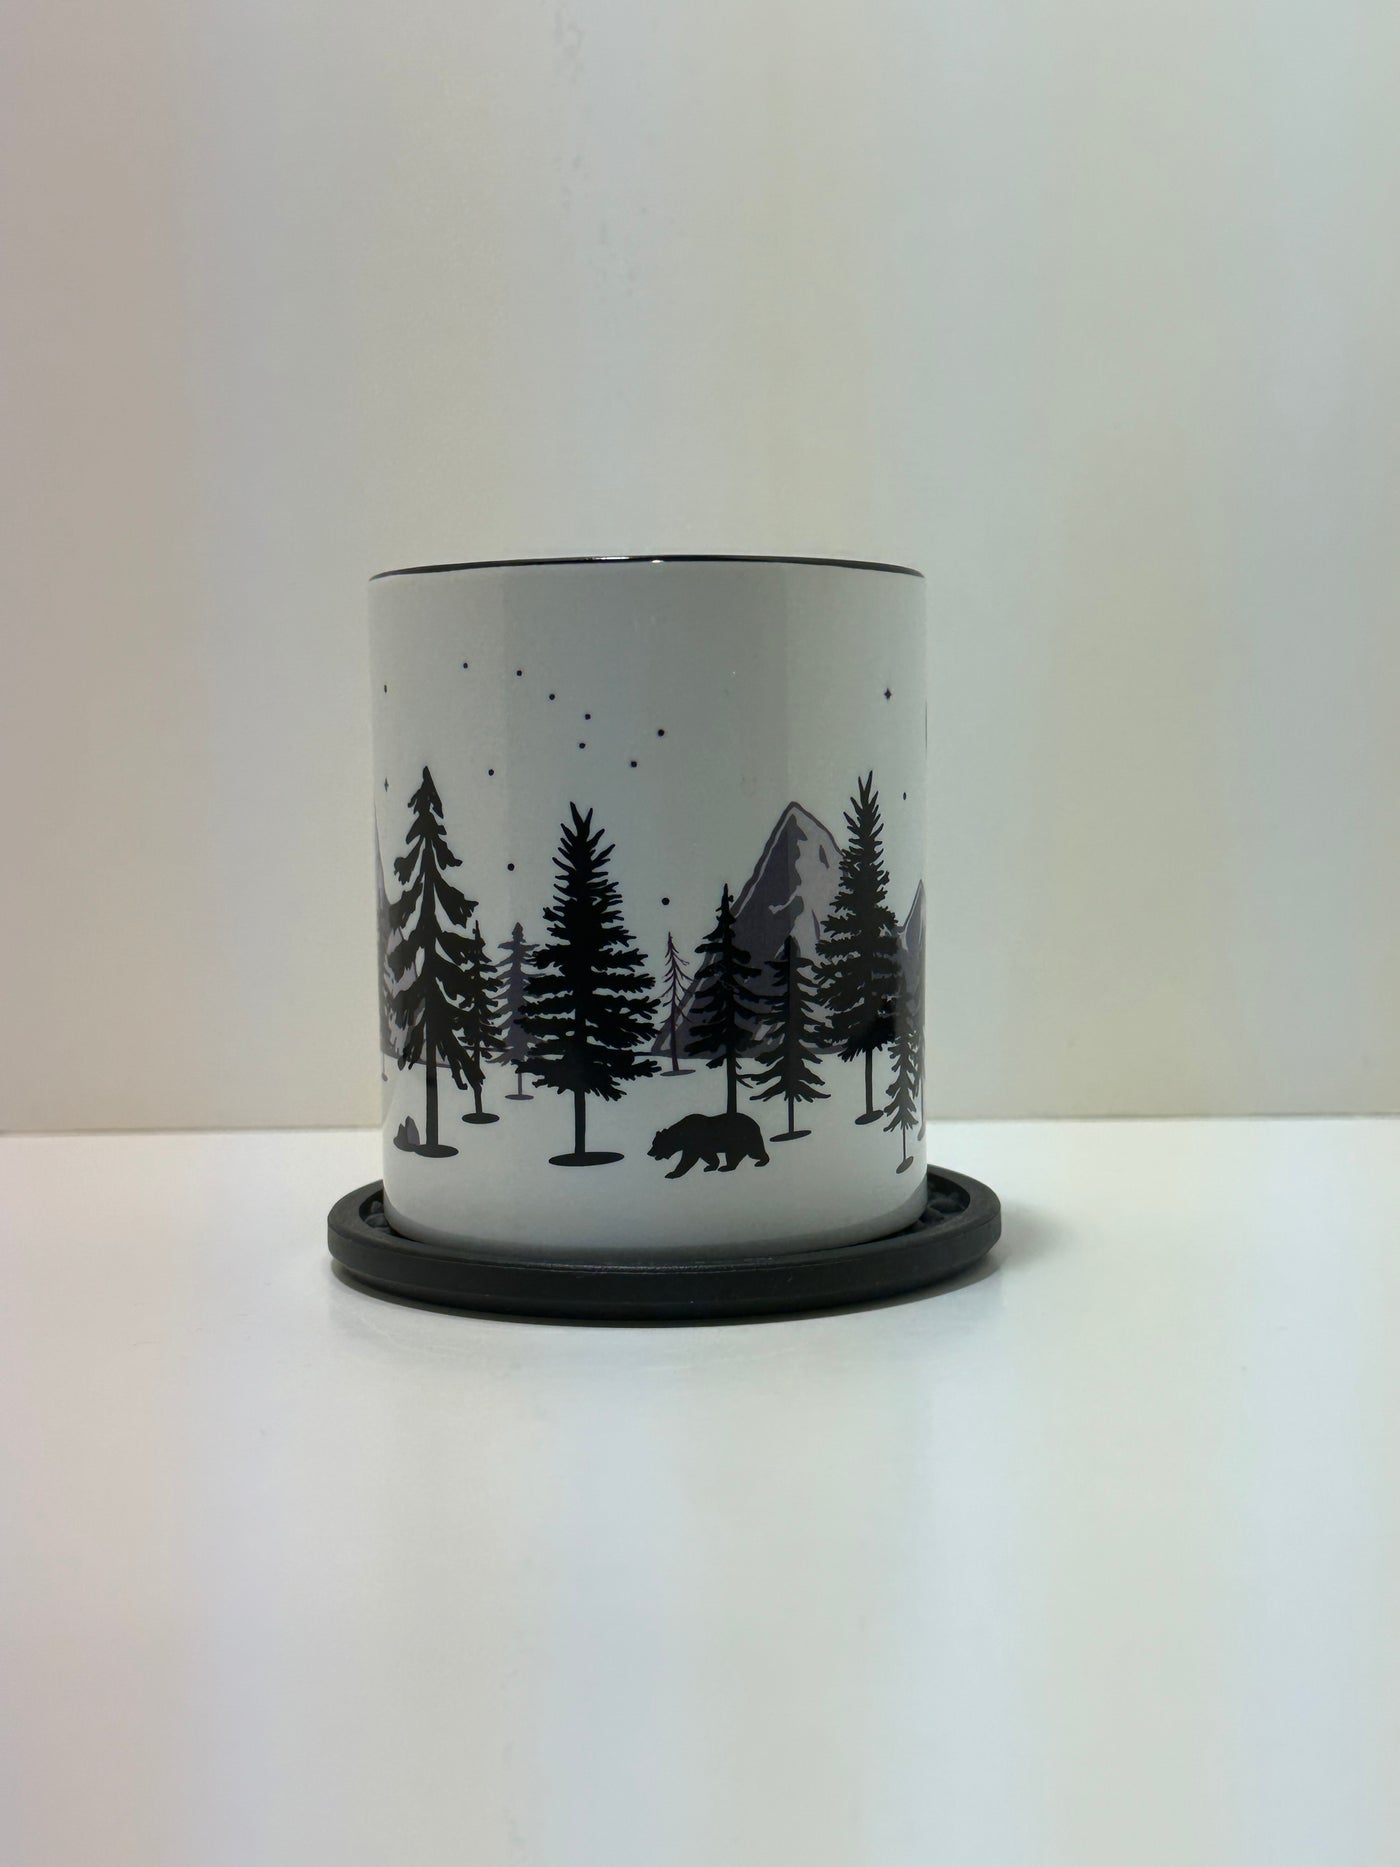 Forest night landscape on mug